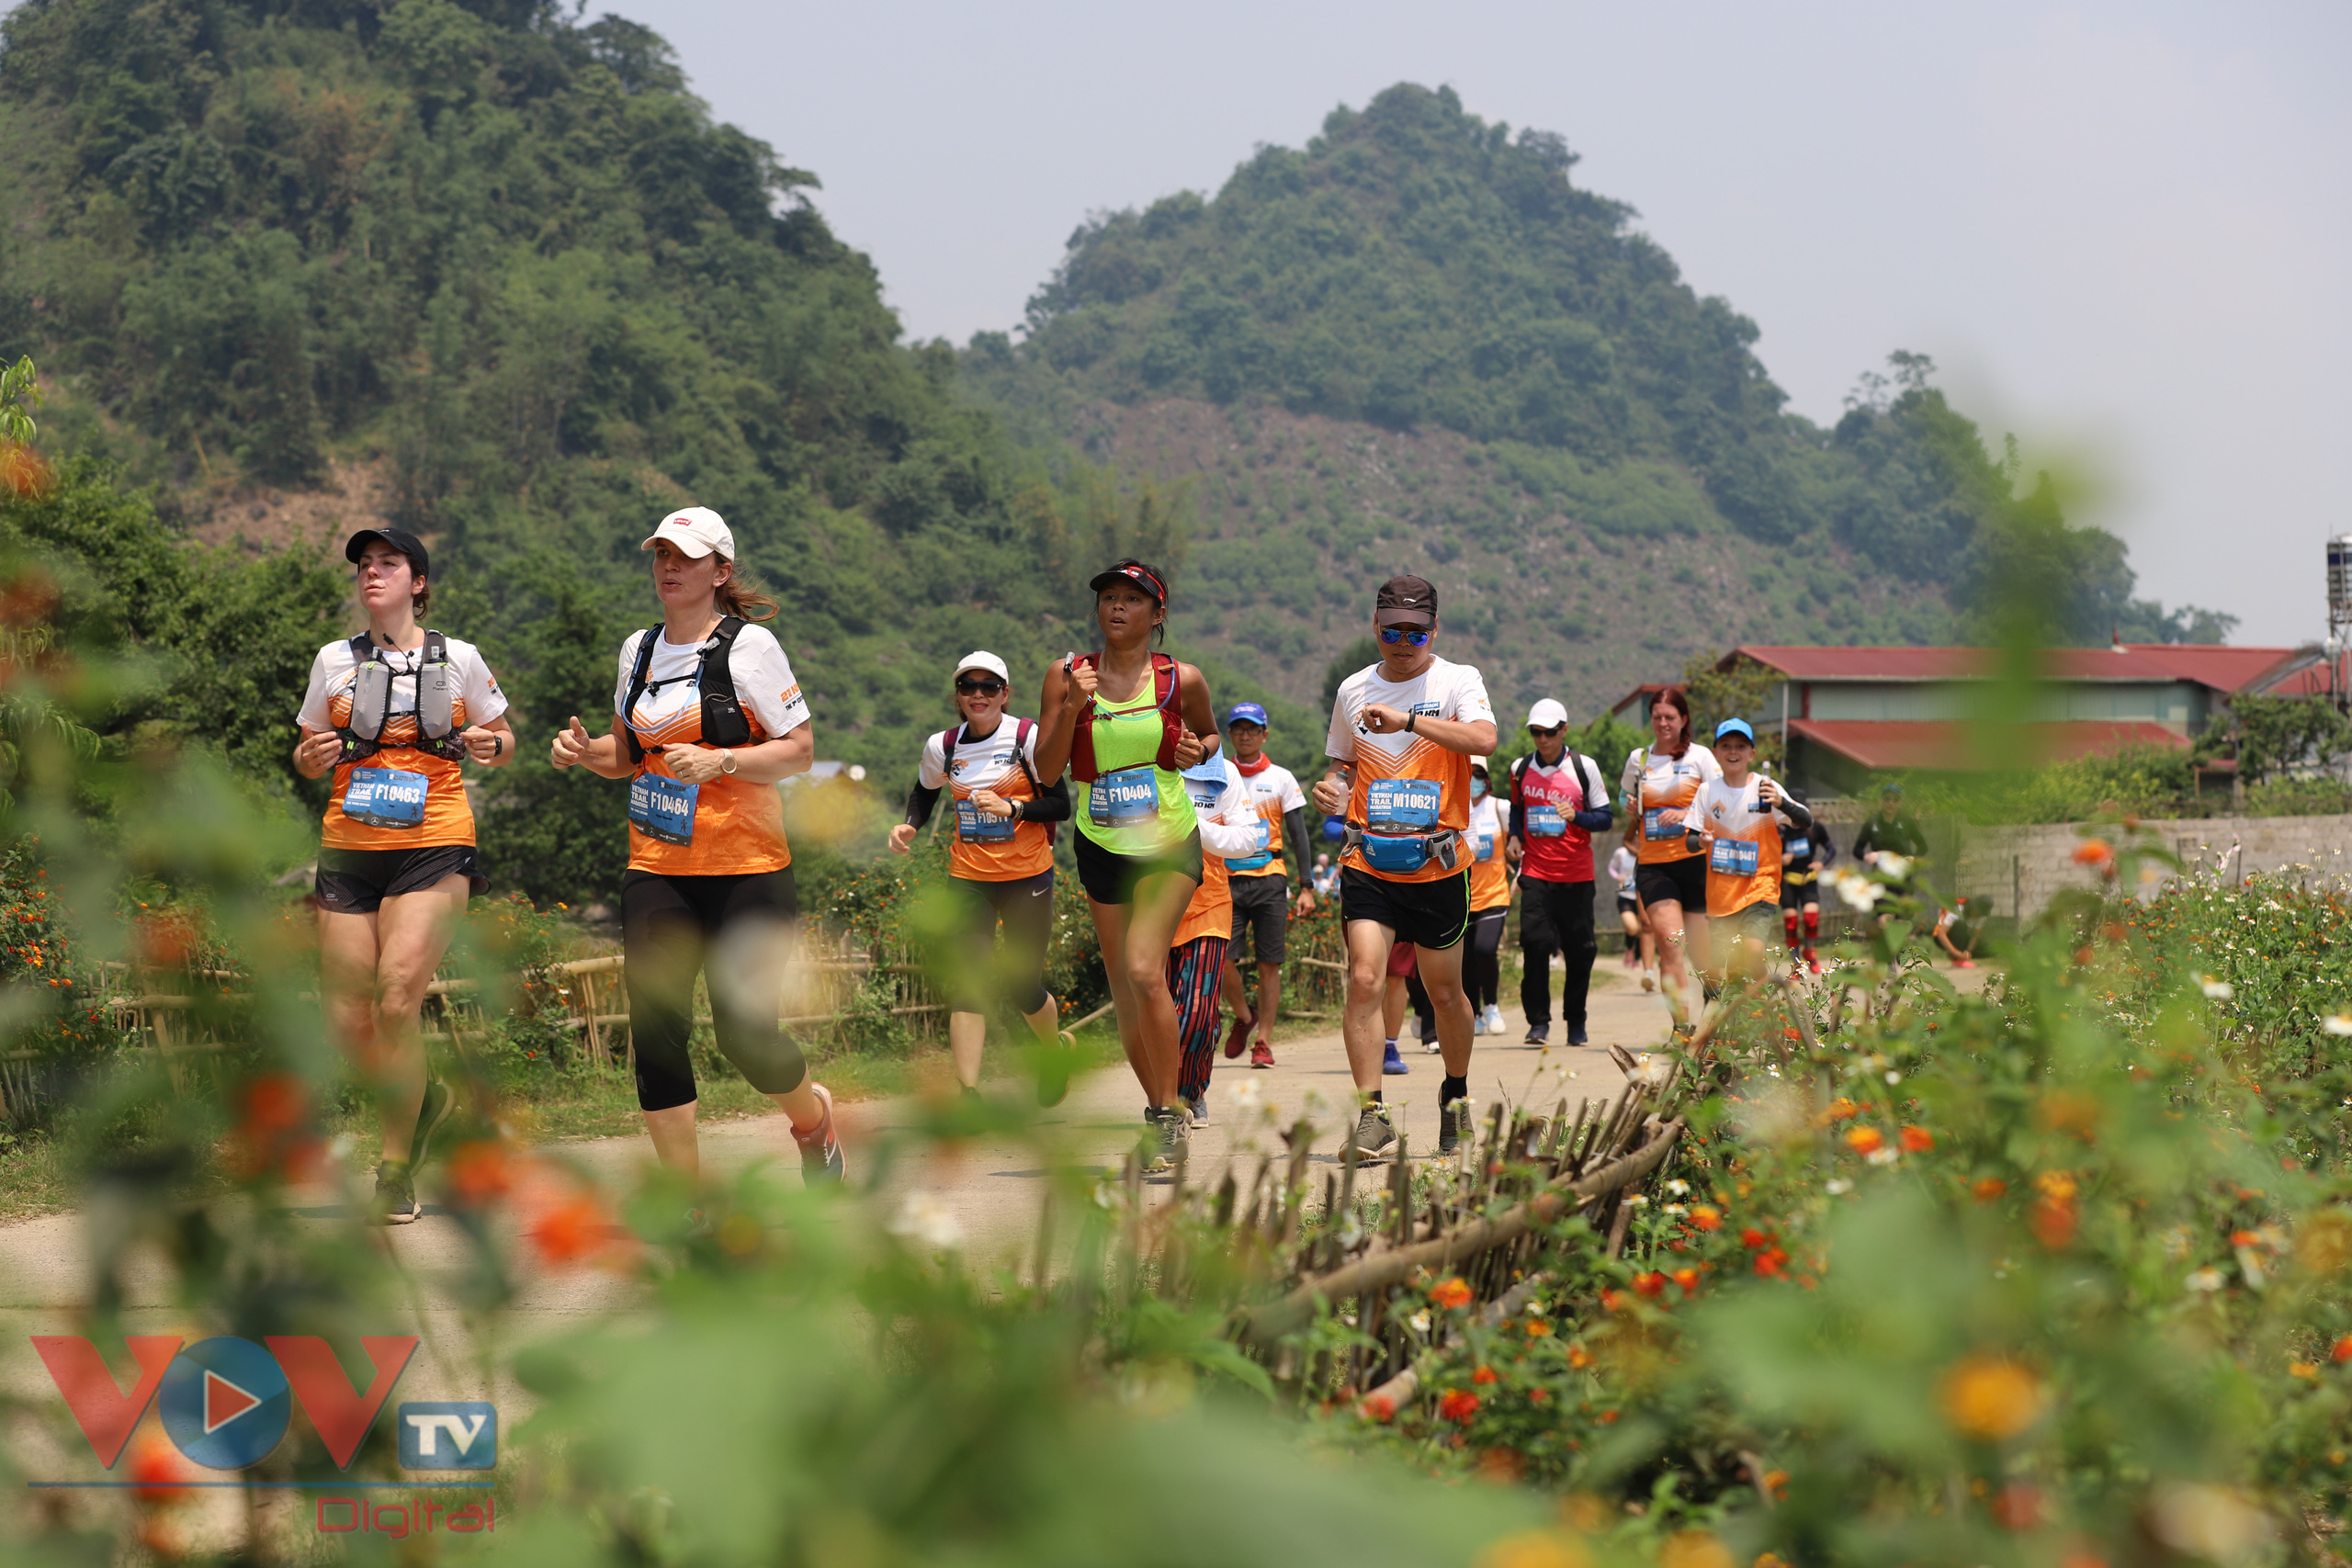 Giải chạy Marathon đường mòn Việt Nam 2021 là cơ hội để các vận động viên giao lưu, học hỏi, rèn luyện sức khỏe...